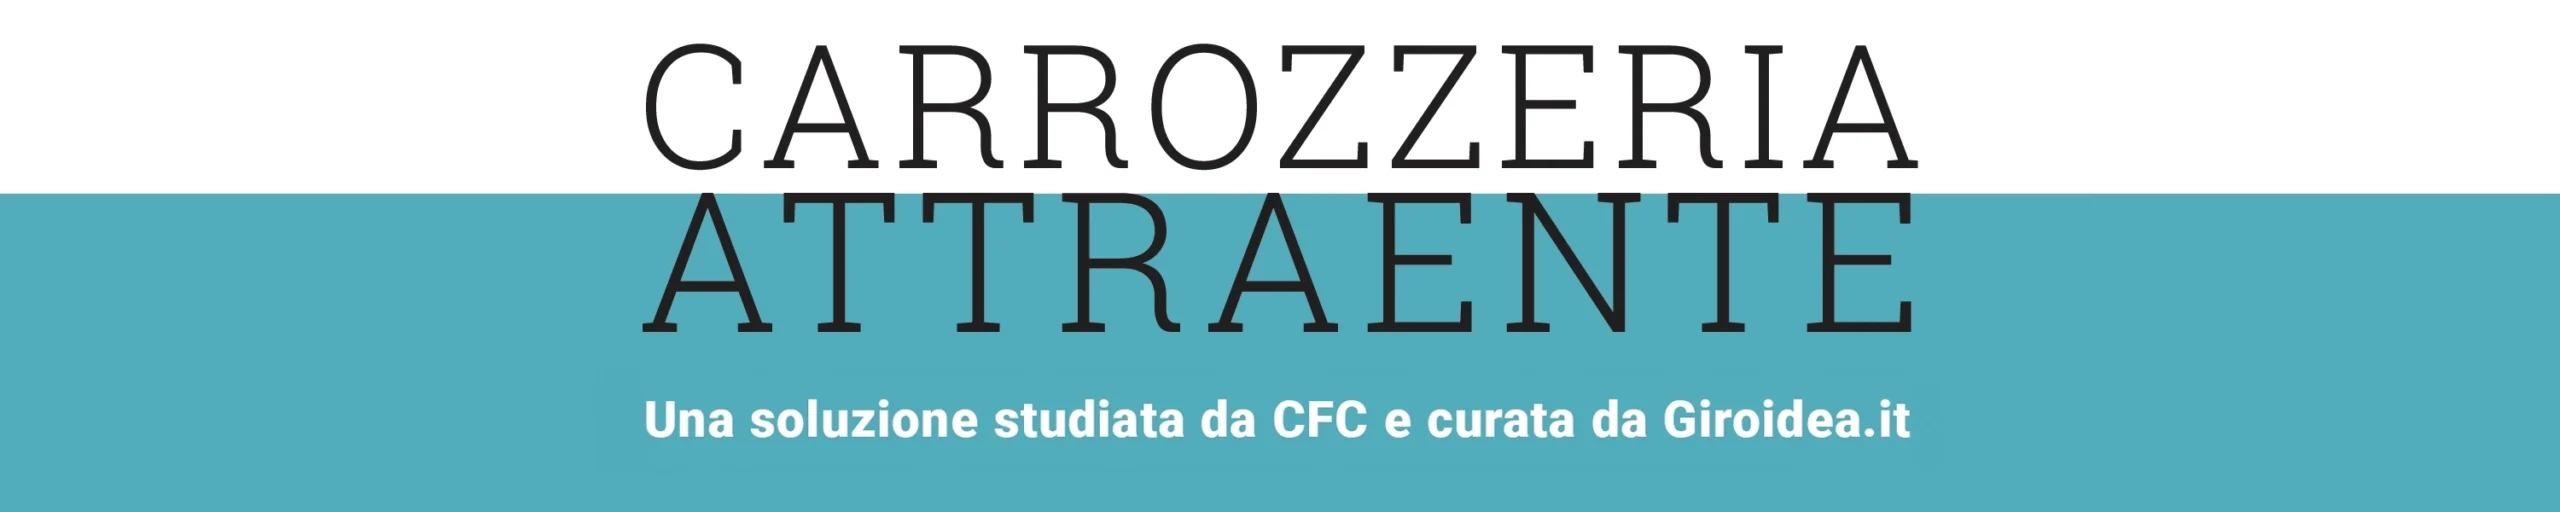 CFC Carrozzeria attraente scaled